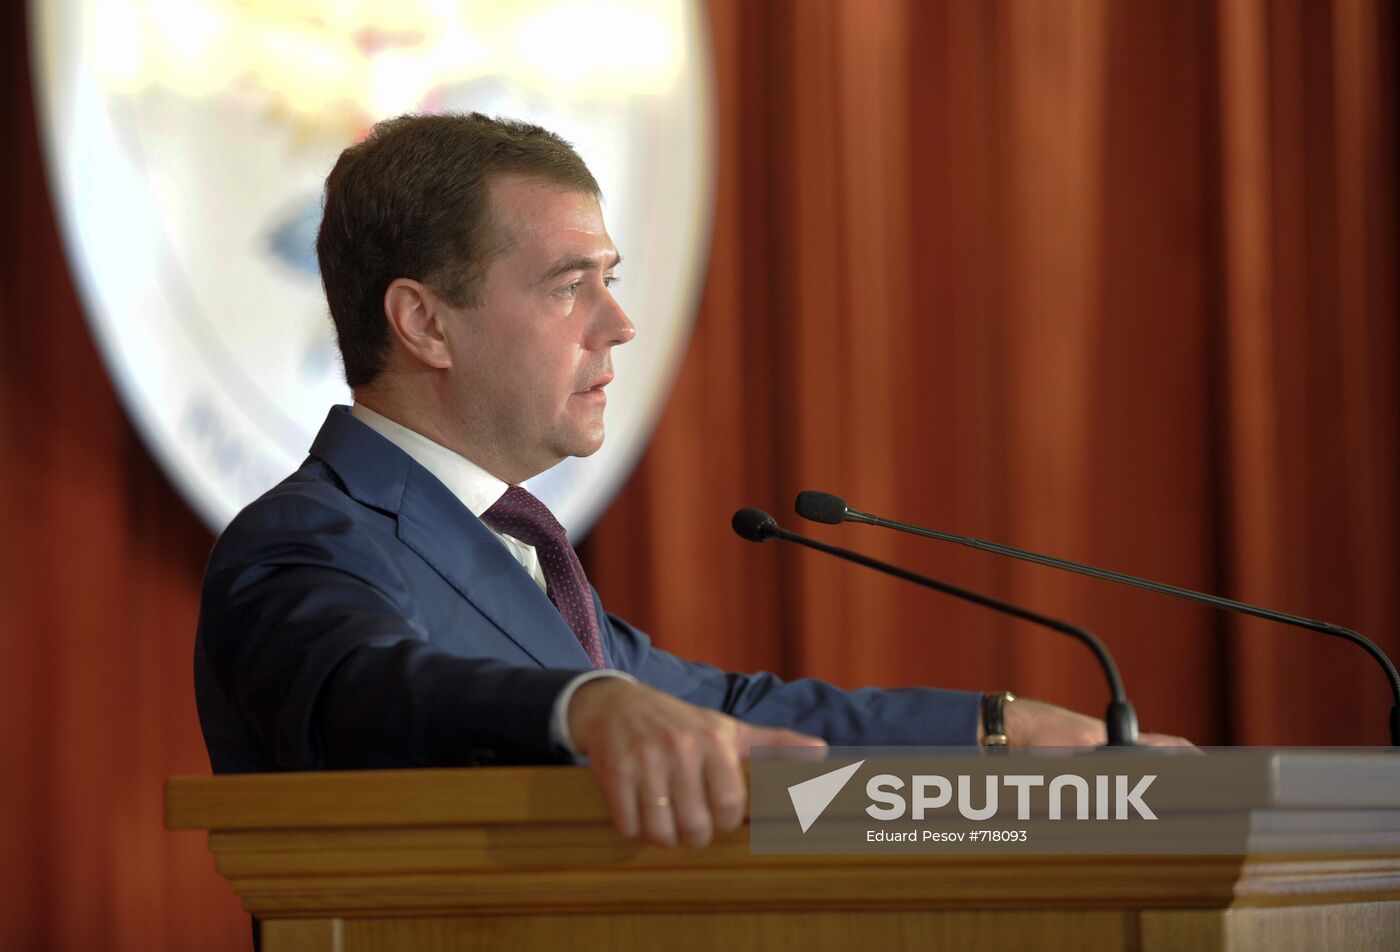 Dmitry Medvedev speaks at Russian diplomats' meeting